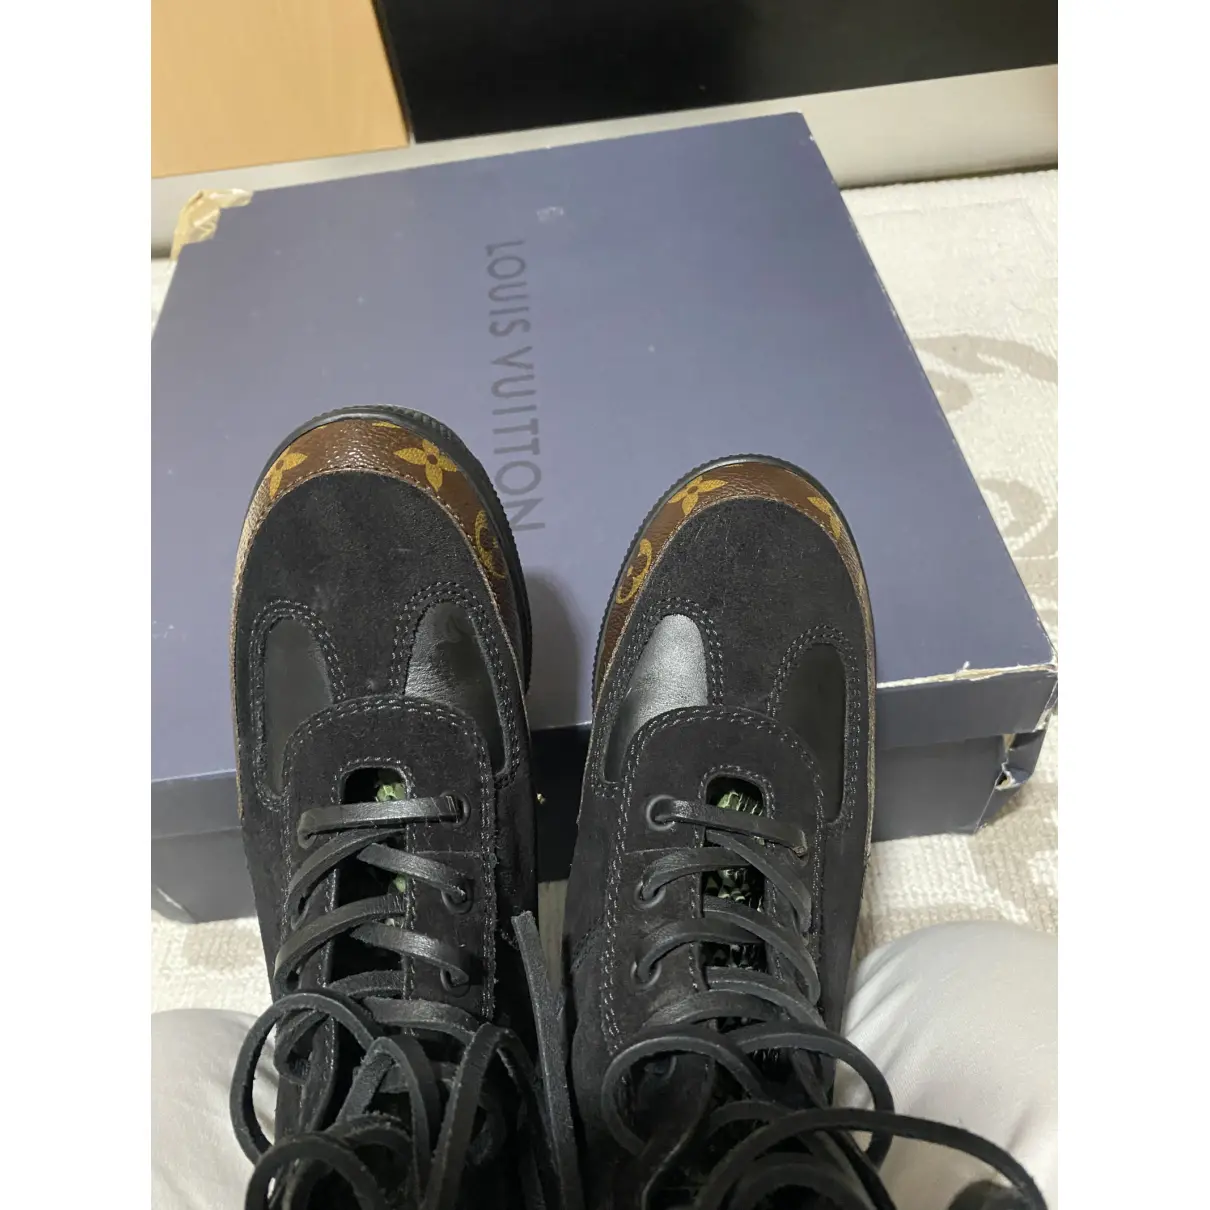 Lauréate ankle boots Louis Vuitton